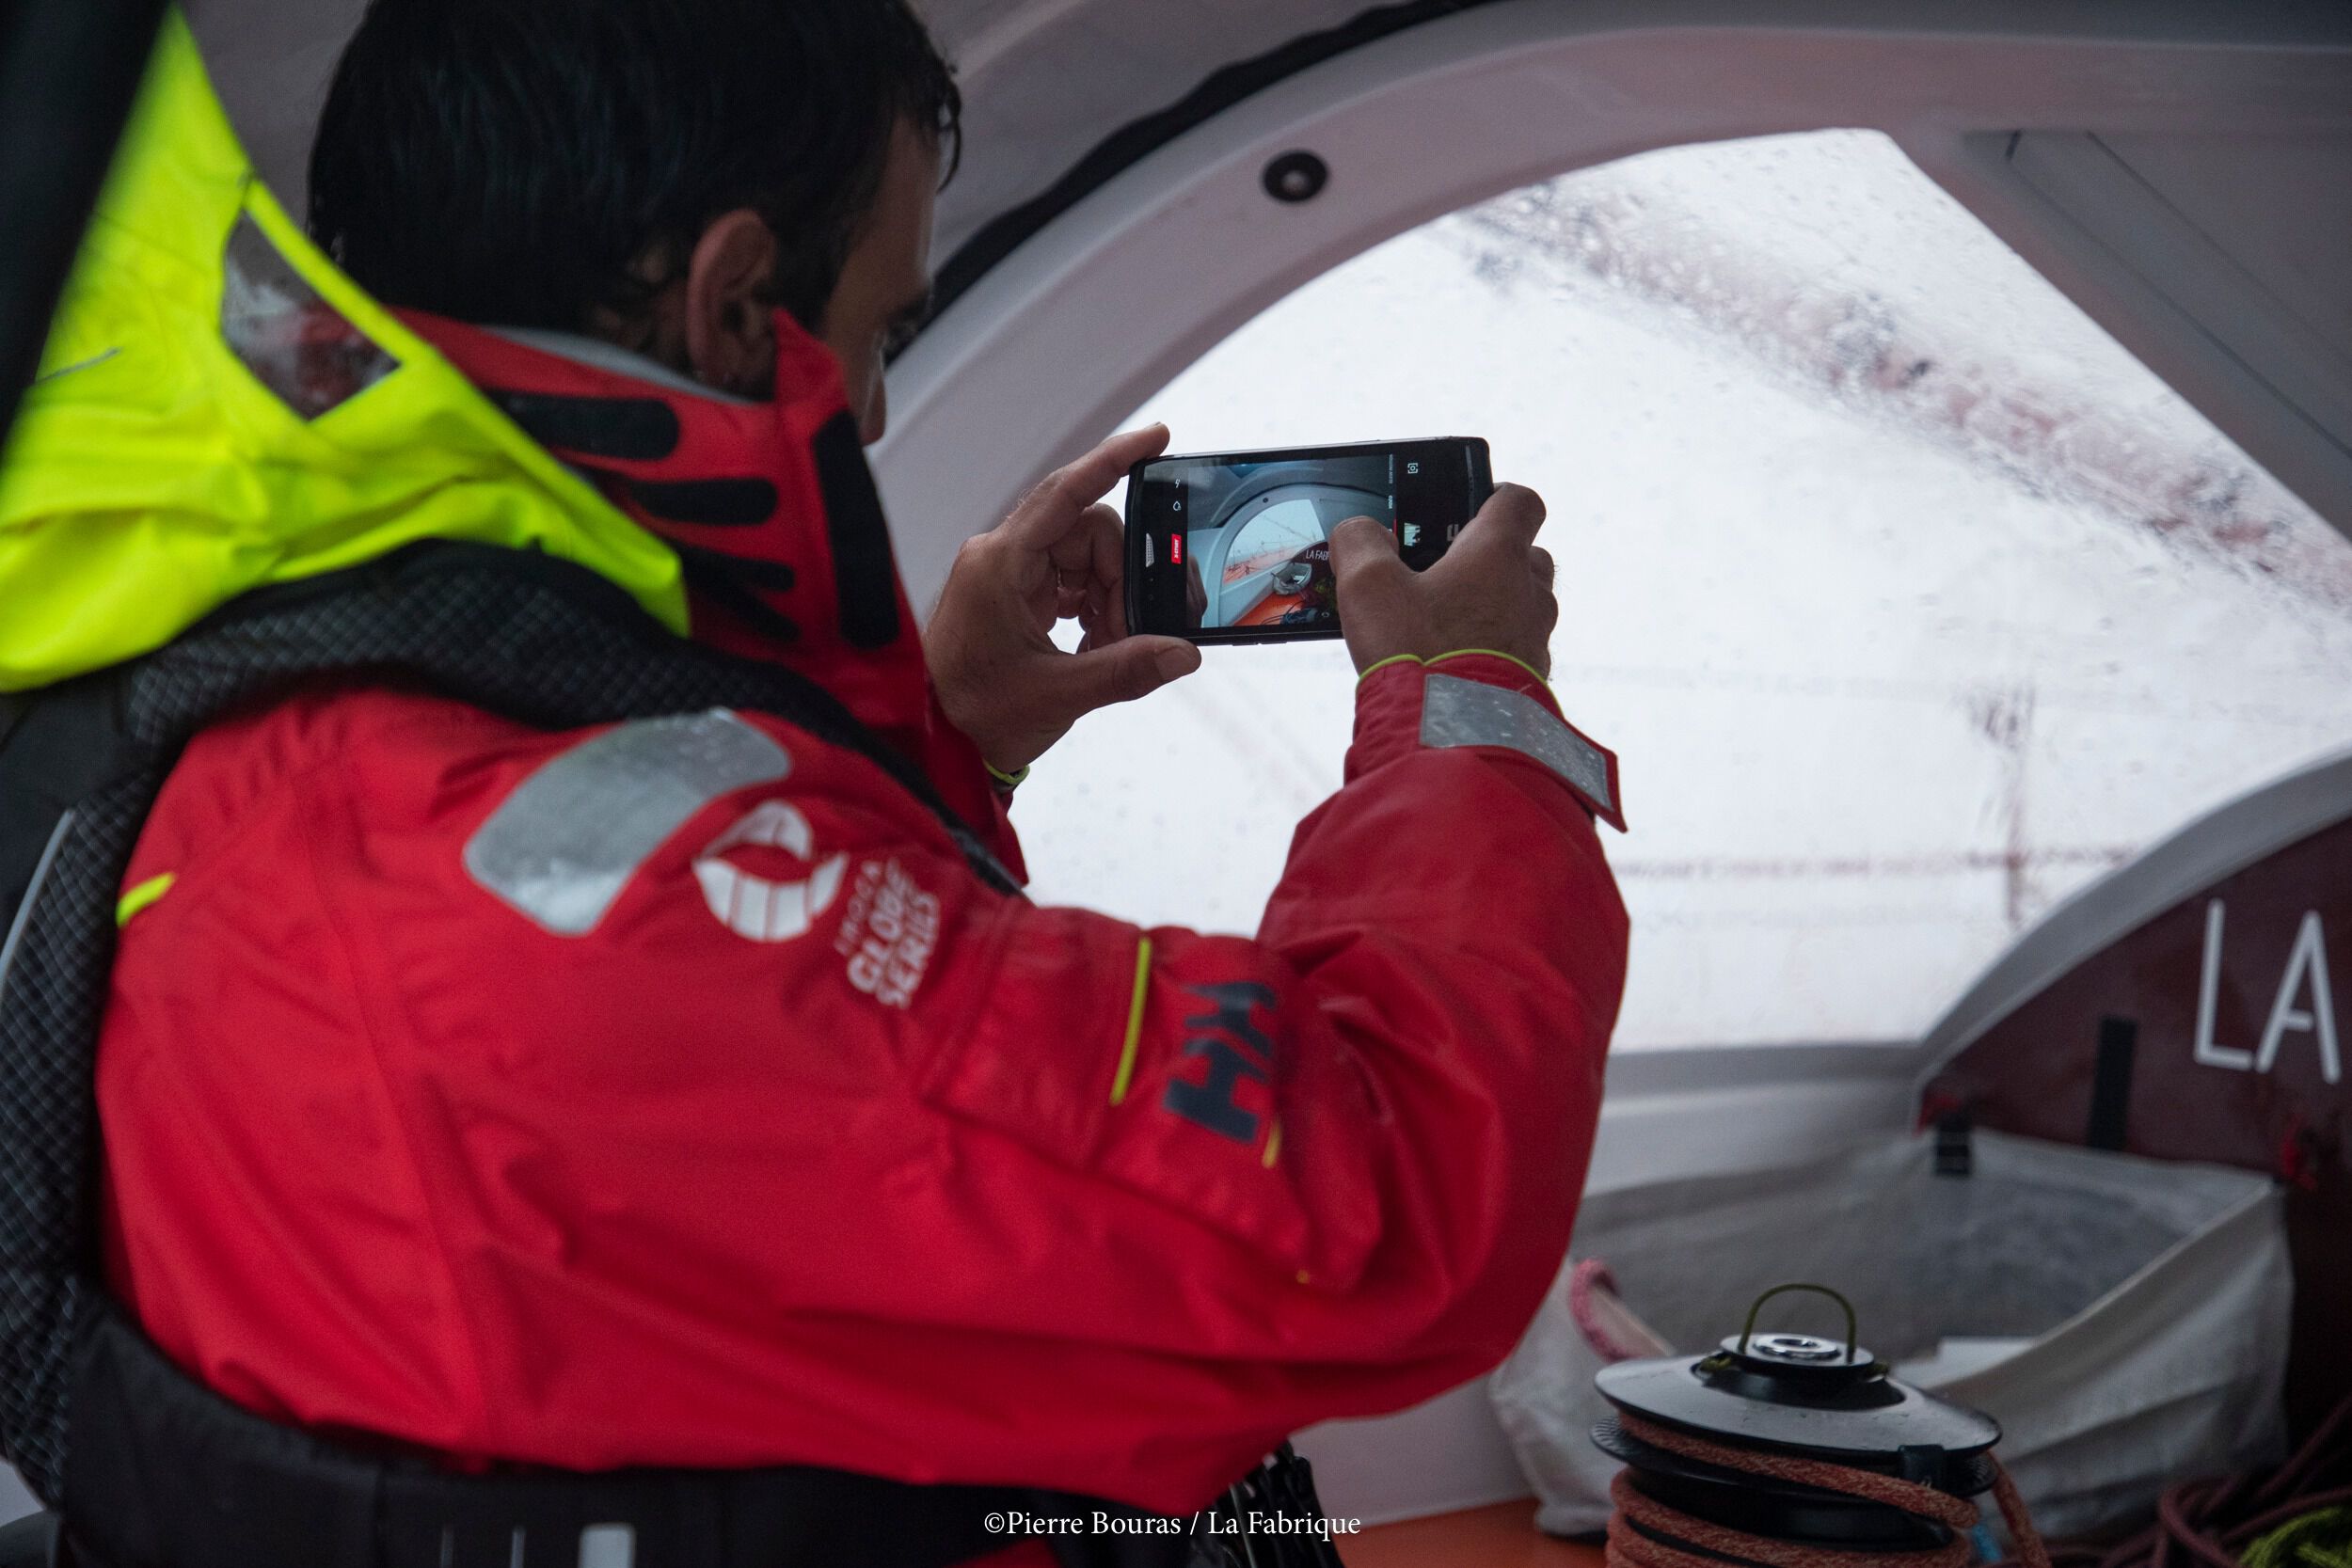 Alain Roura photographiant voilier avec son smartphone Crosscall TREKKER-X4